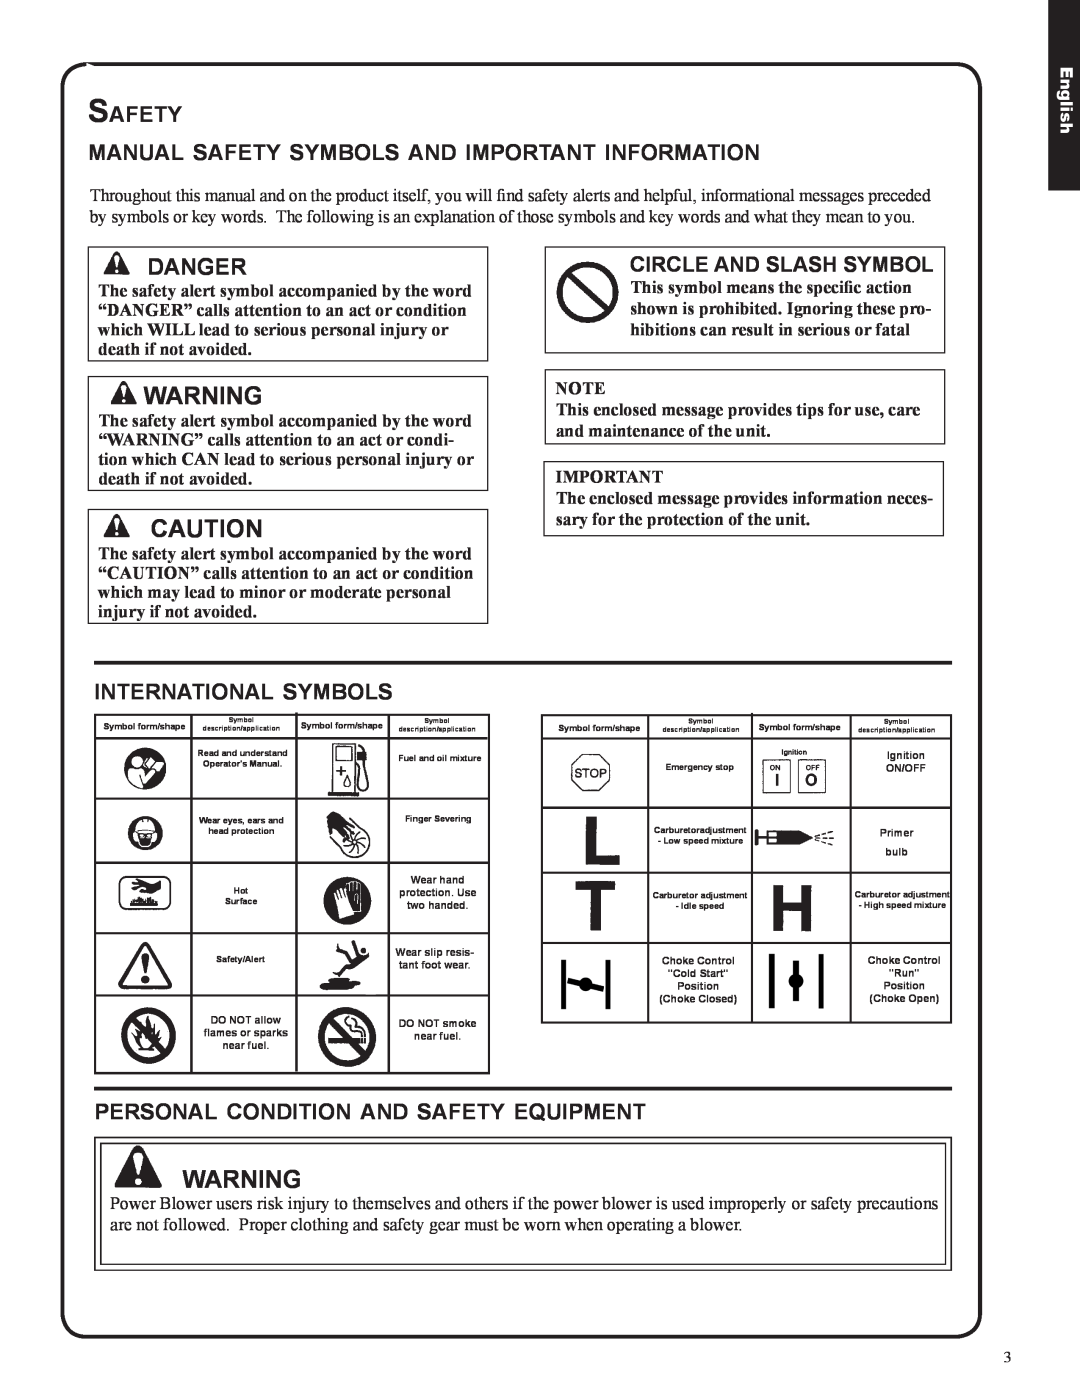 Shindaiwa 82050, EB633RT Safety, manual safety symbols and important information, Danger, international symbols, English 